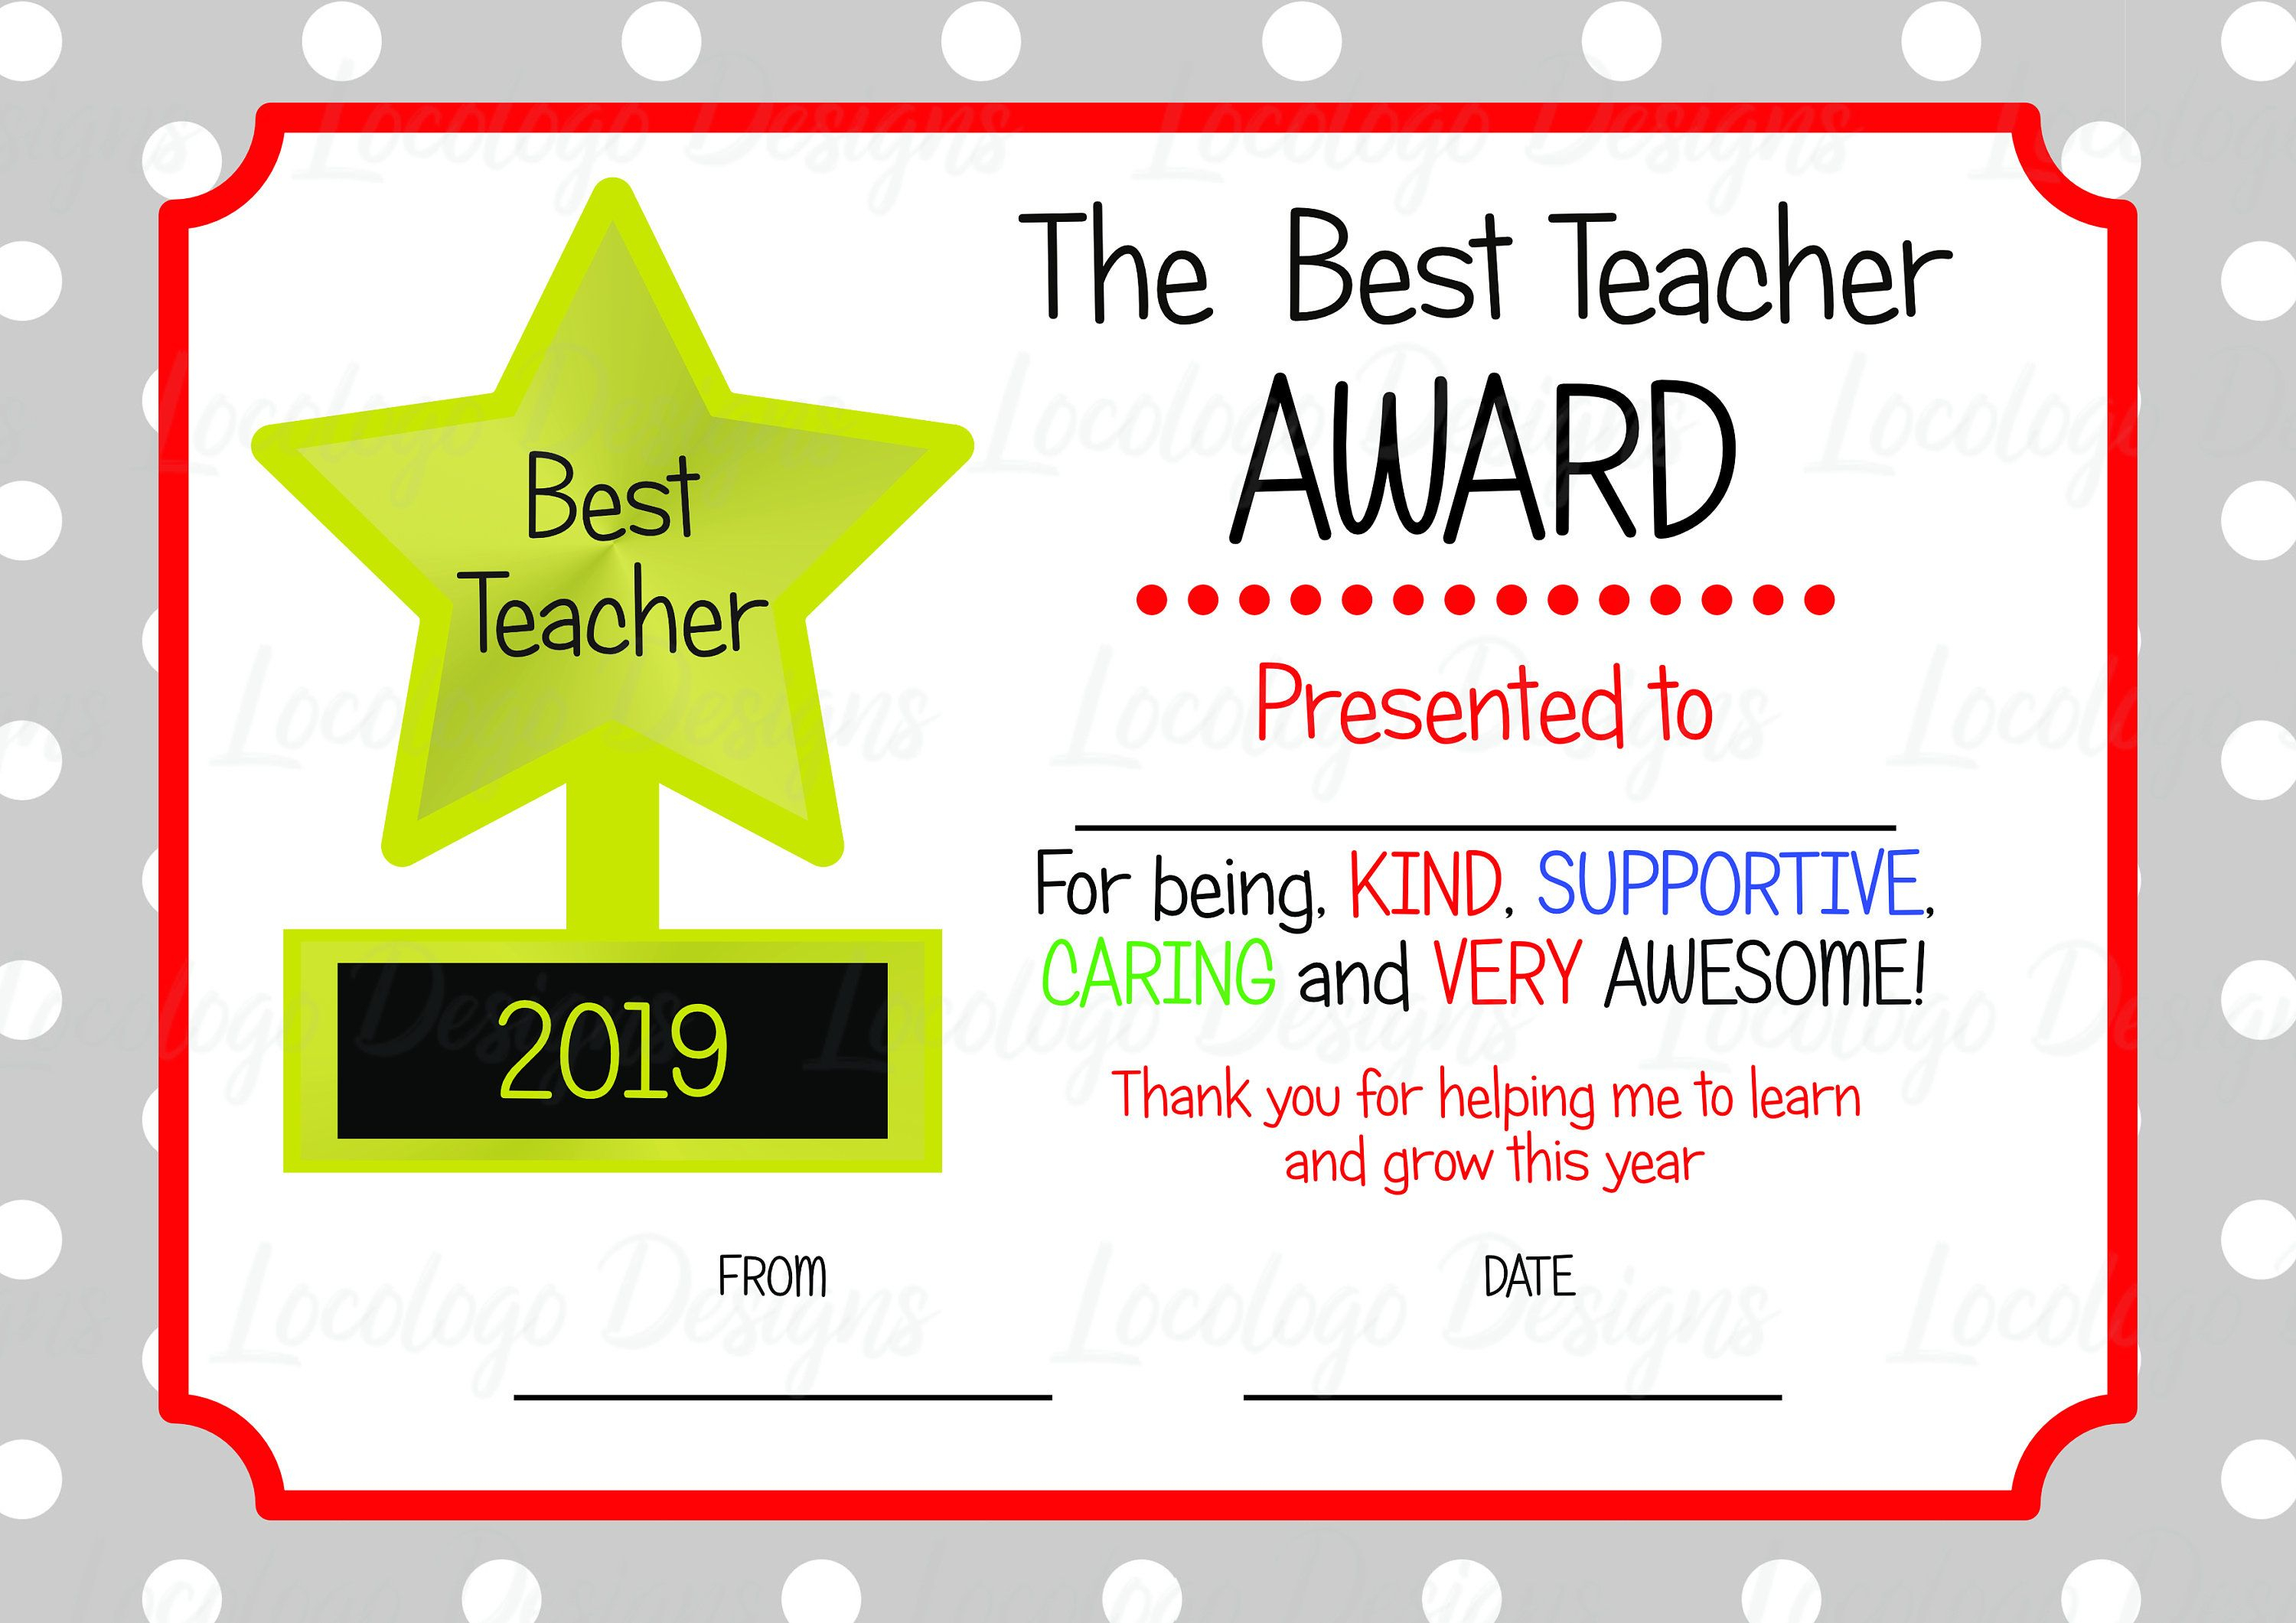 Teacher awards. Best teacher Award. Best teacher Certificate. Award Certificate for teachers. Certificate Awarded best teacher.